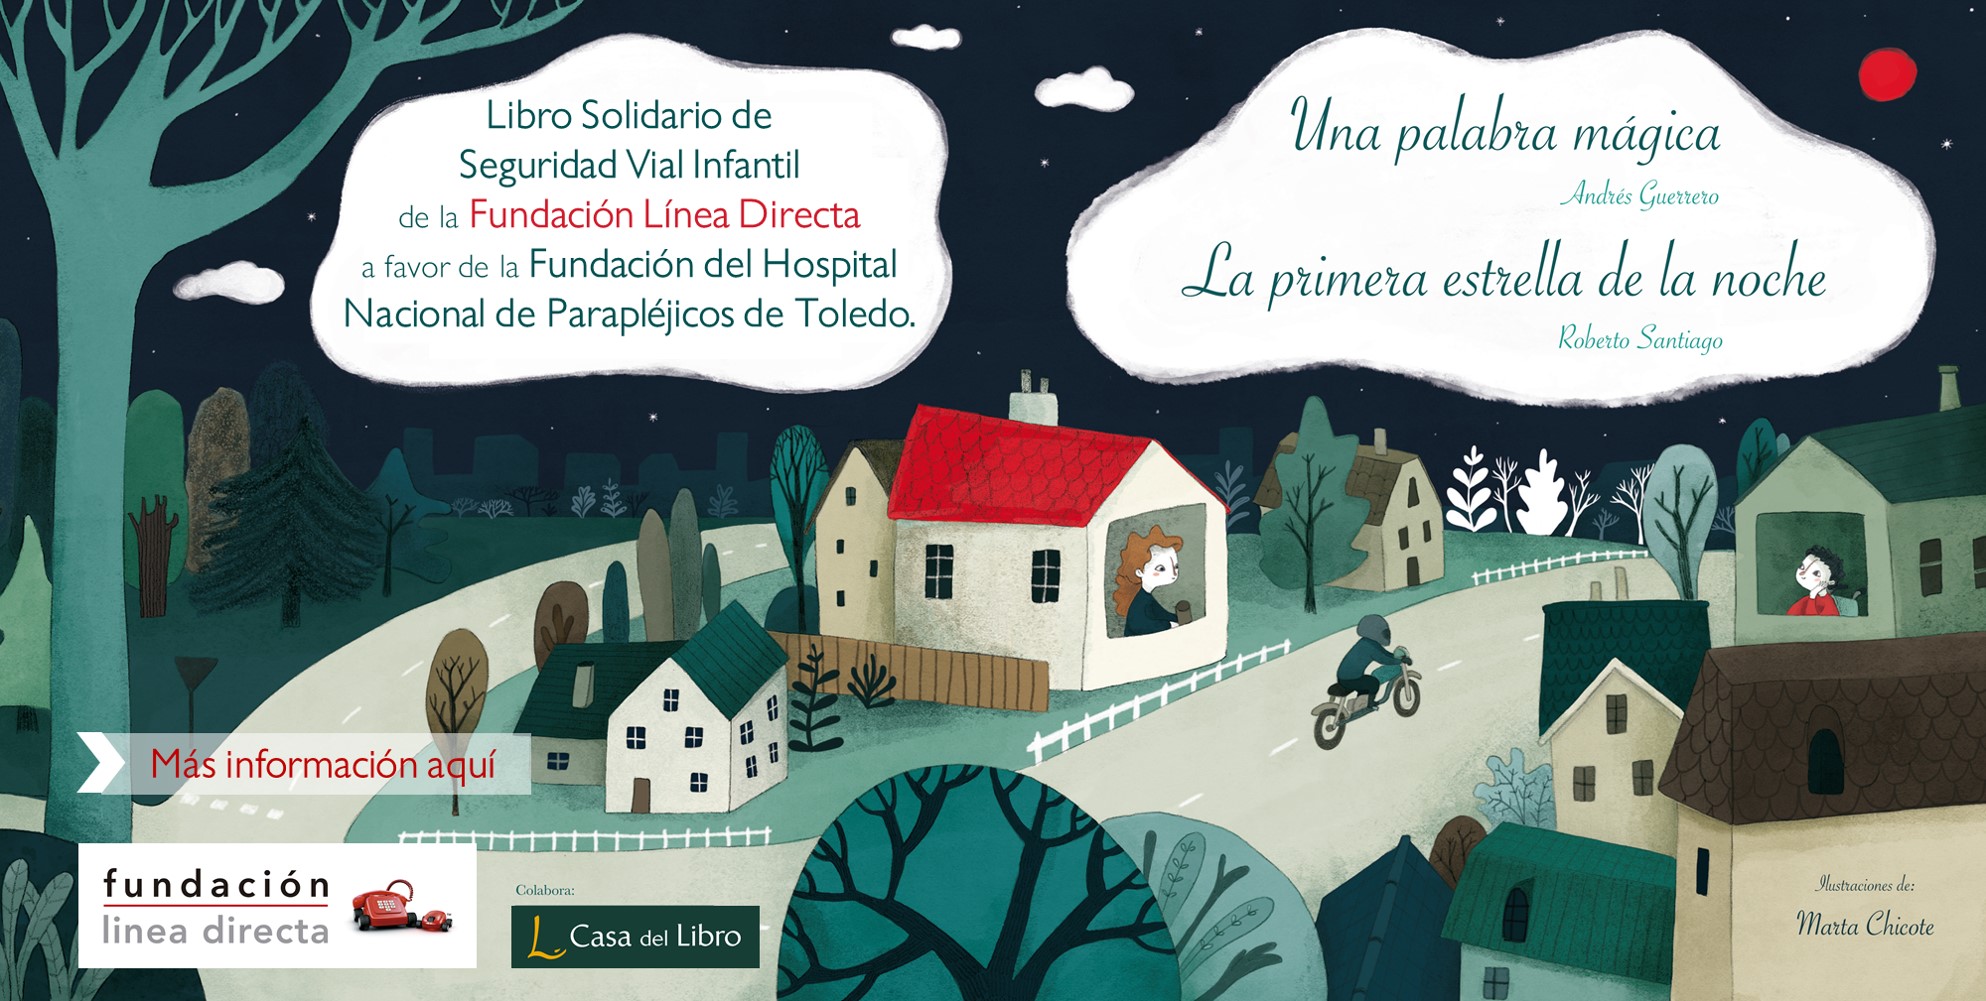 La Fundación Línea Directa lanza un libro solidario infantil a beneficio del hospital nacional de parapléjicos de Toledo